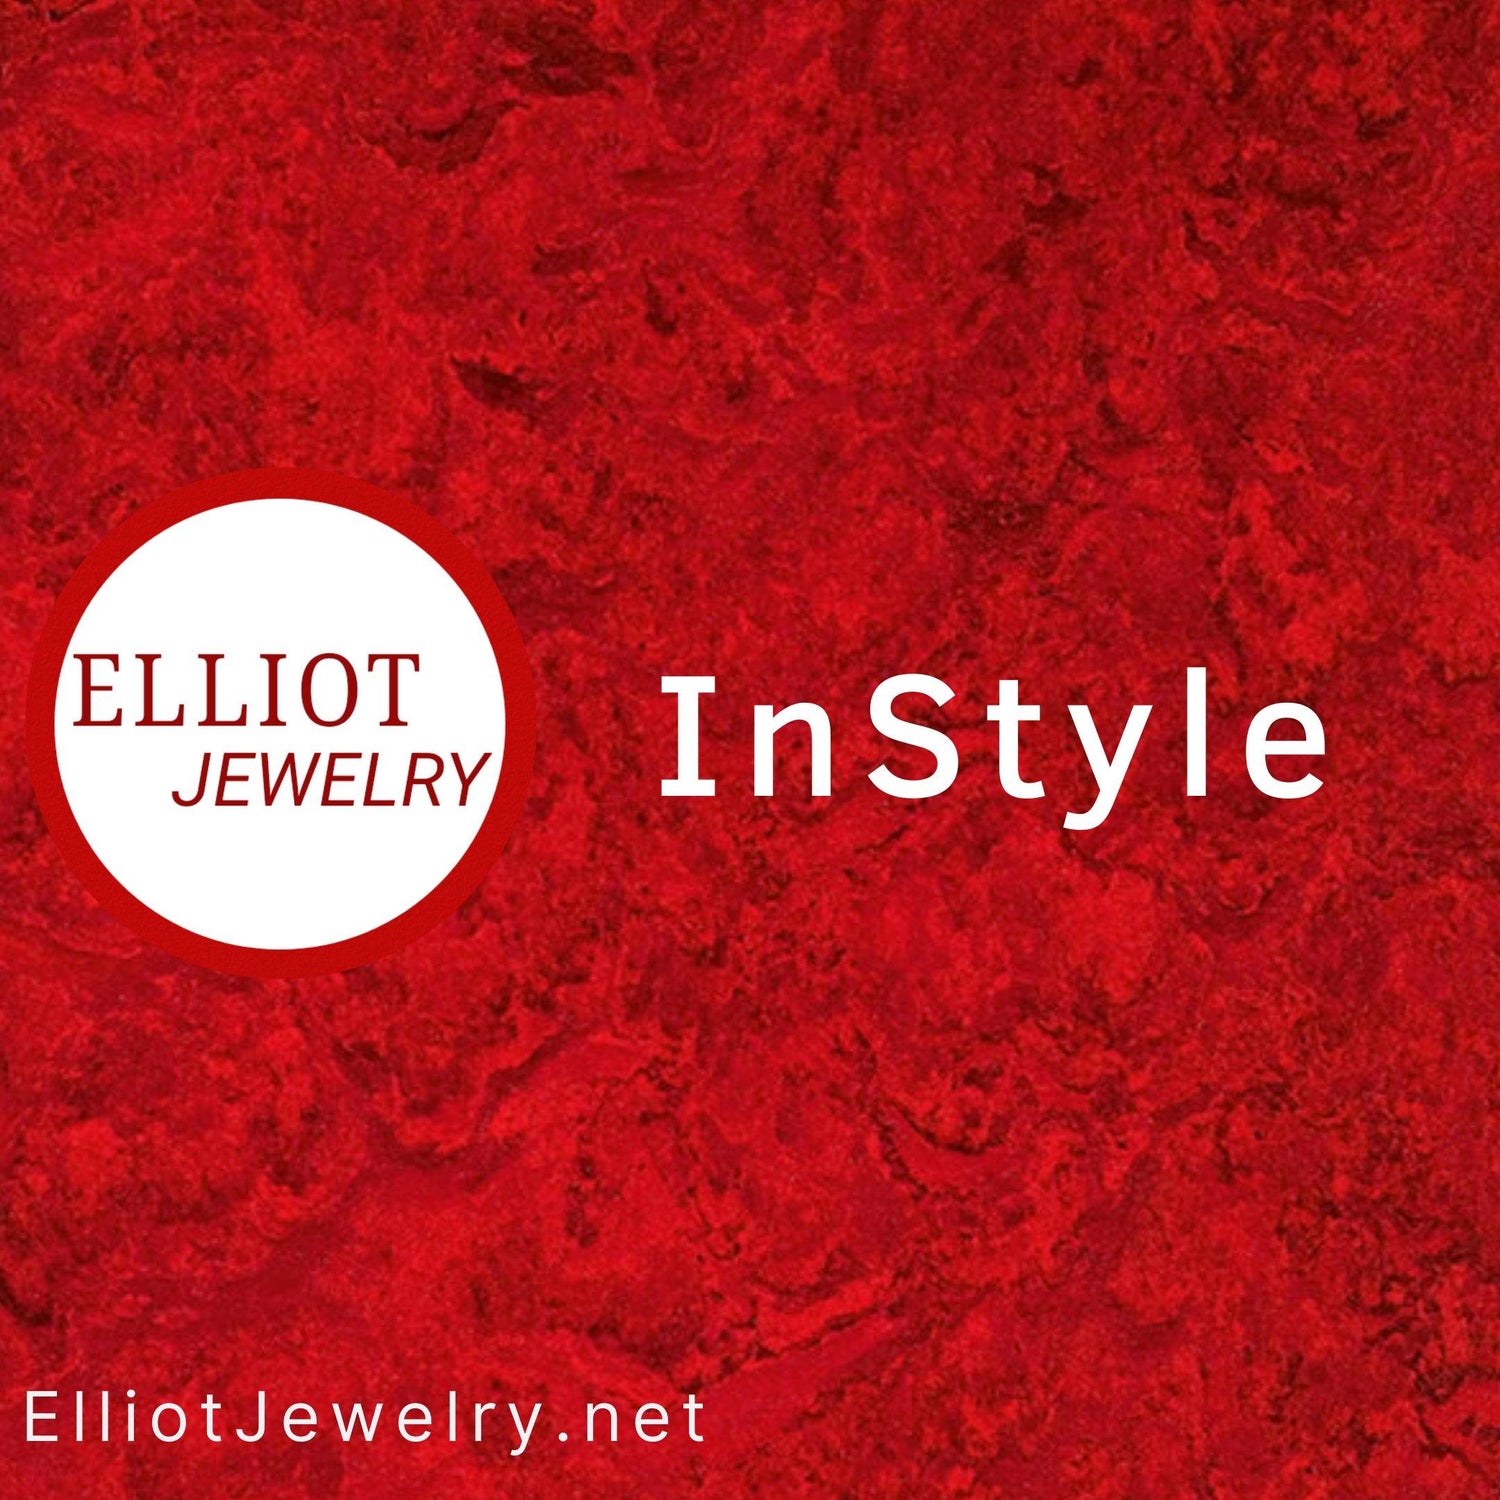 Instyle Jewelry | Elliot Jewelry